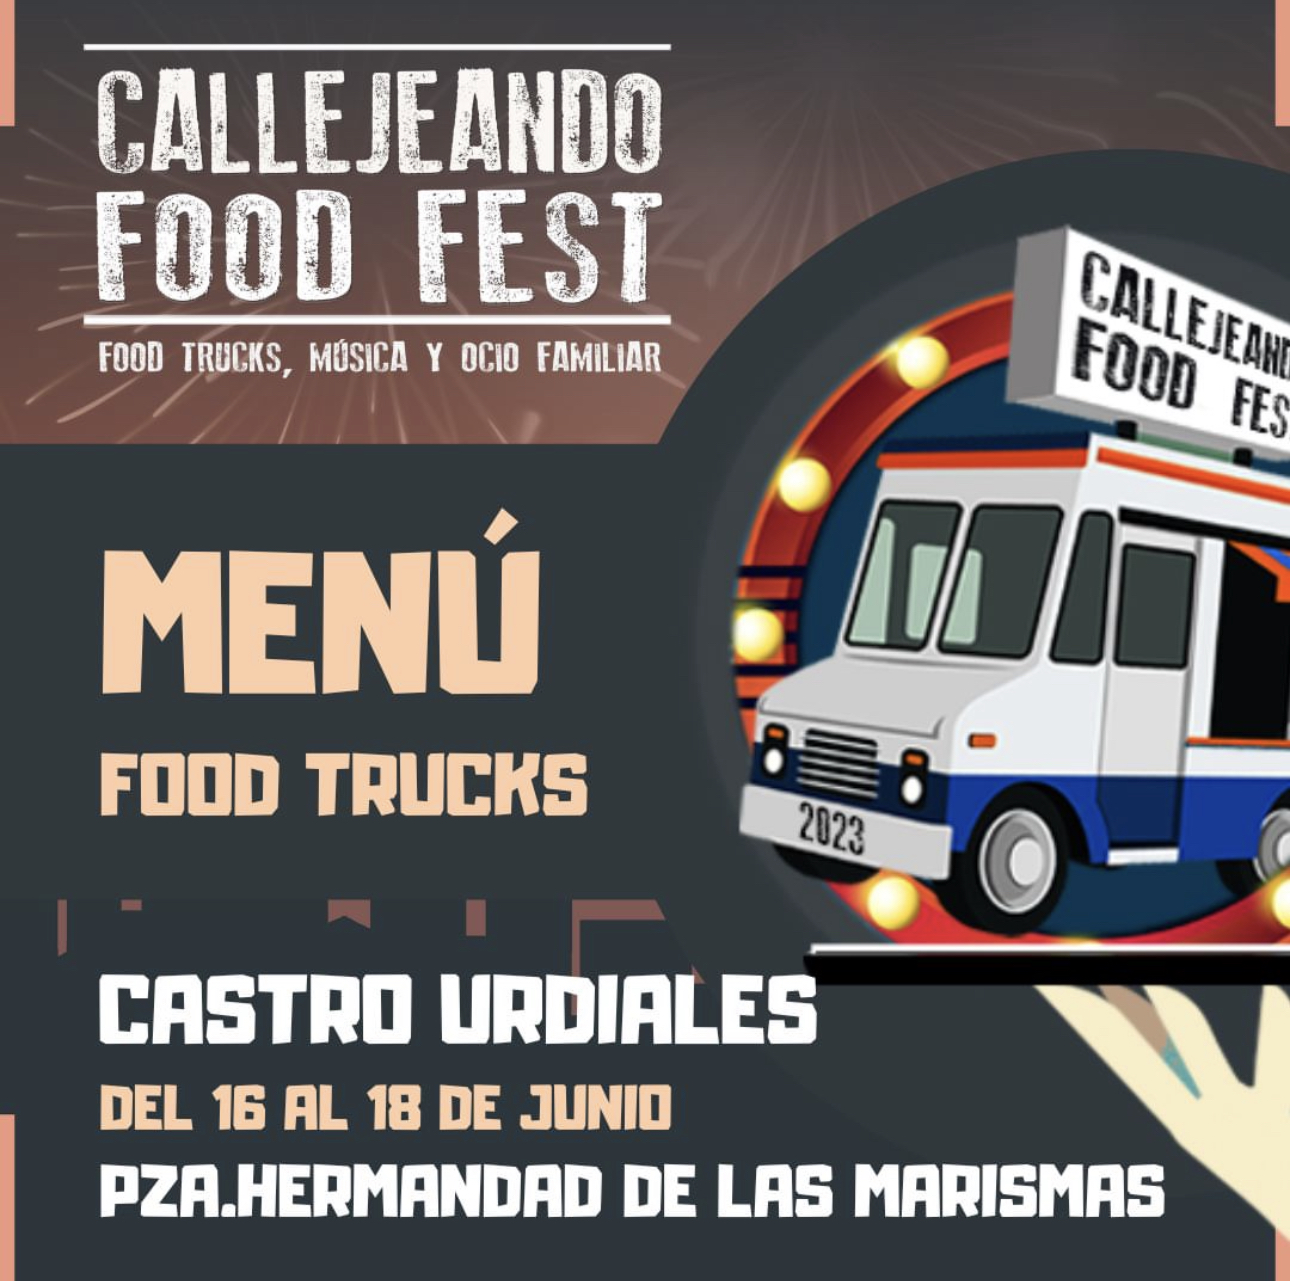 Callejeando Food Fest en Castro Urdiales 2023